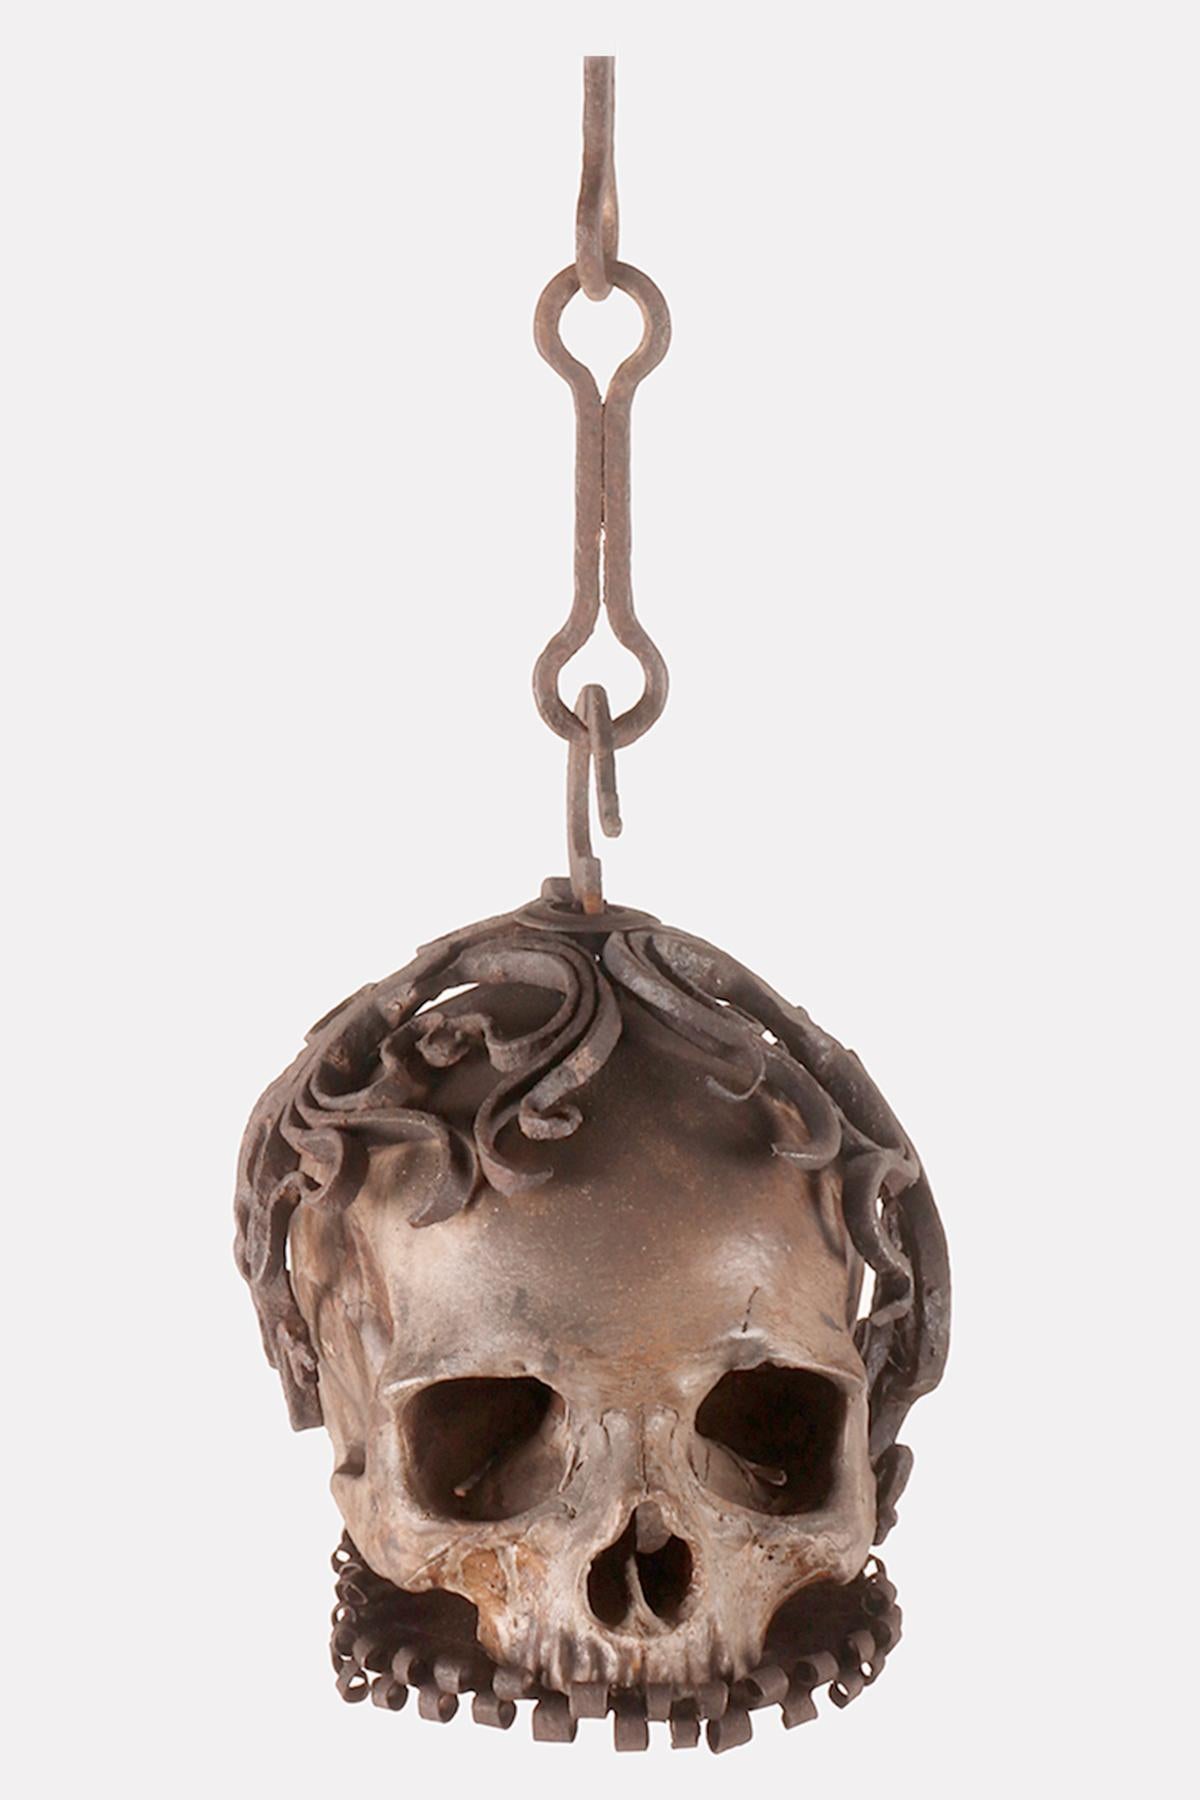 Un rare exemple de Memento Mori de Wunderkammer représentant un crâne en cage dans une structure en fer forgé, avec une chaîne pour le suspendre. La sculpture est réalisée en plâtre de scagliola d'un haut niveau artistique et exécutif. Il repose sur